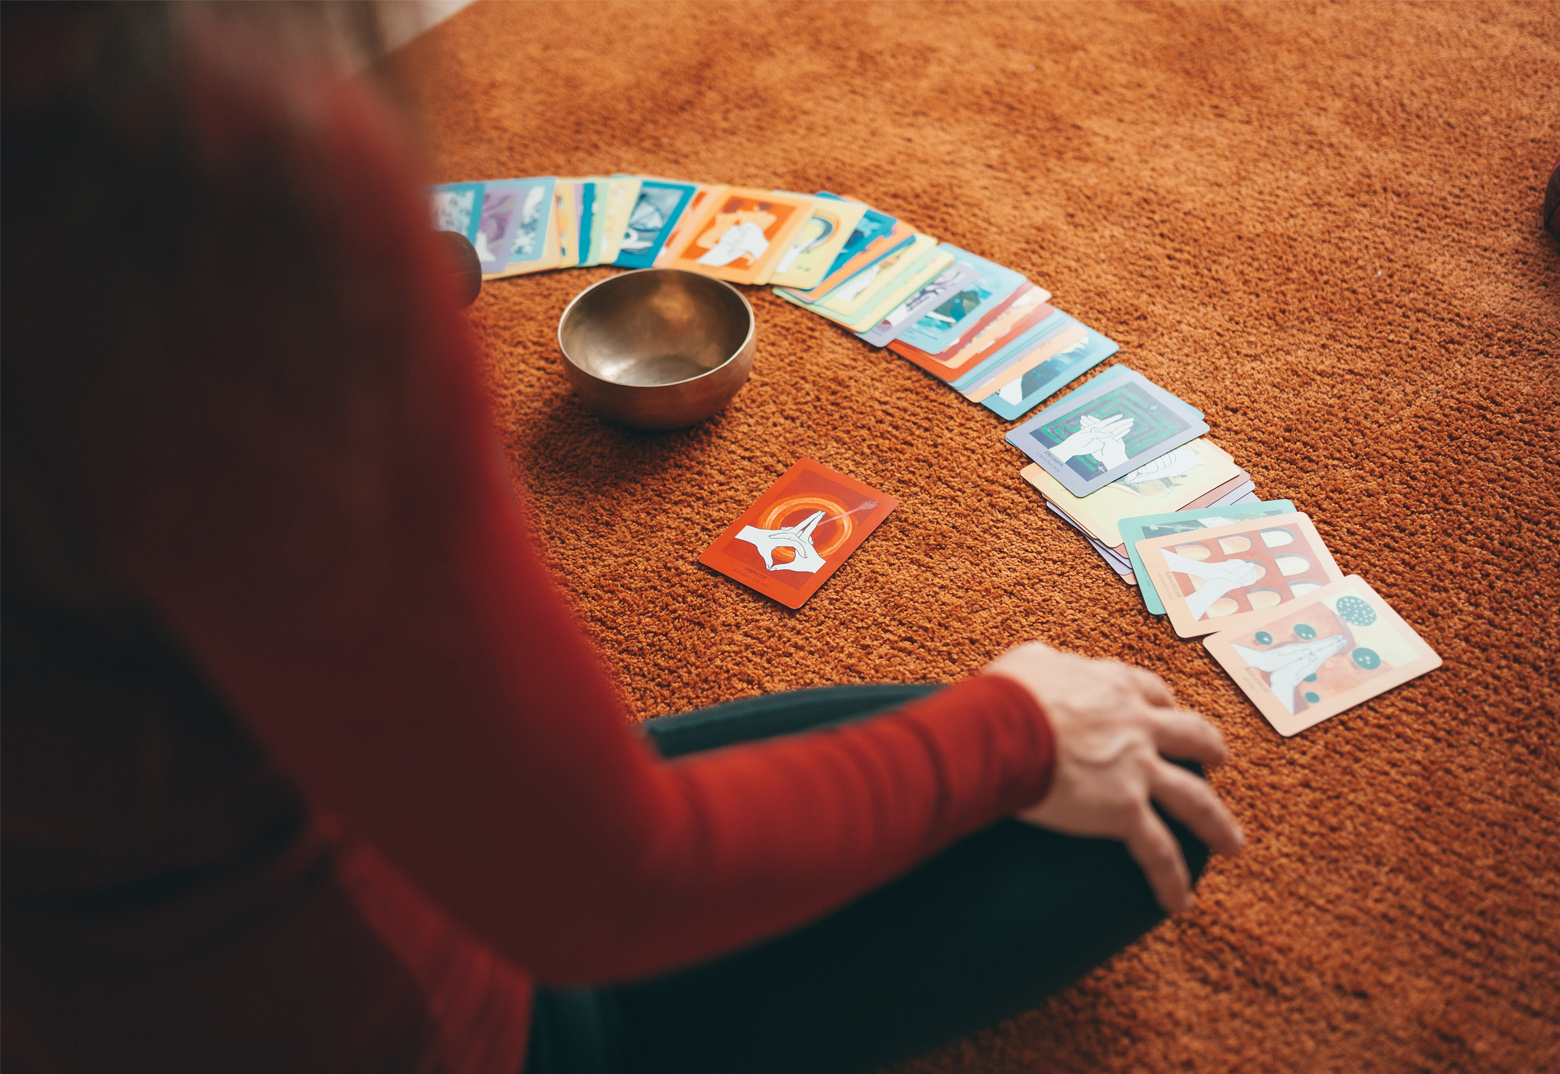 Eine Frau sitzt auf einem Orangen Teppich und hat Karten mit individuellen Motiven in einem Bogen ausgelegt